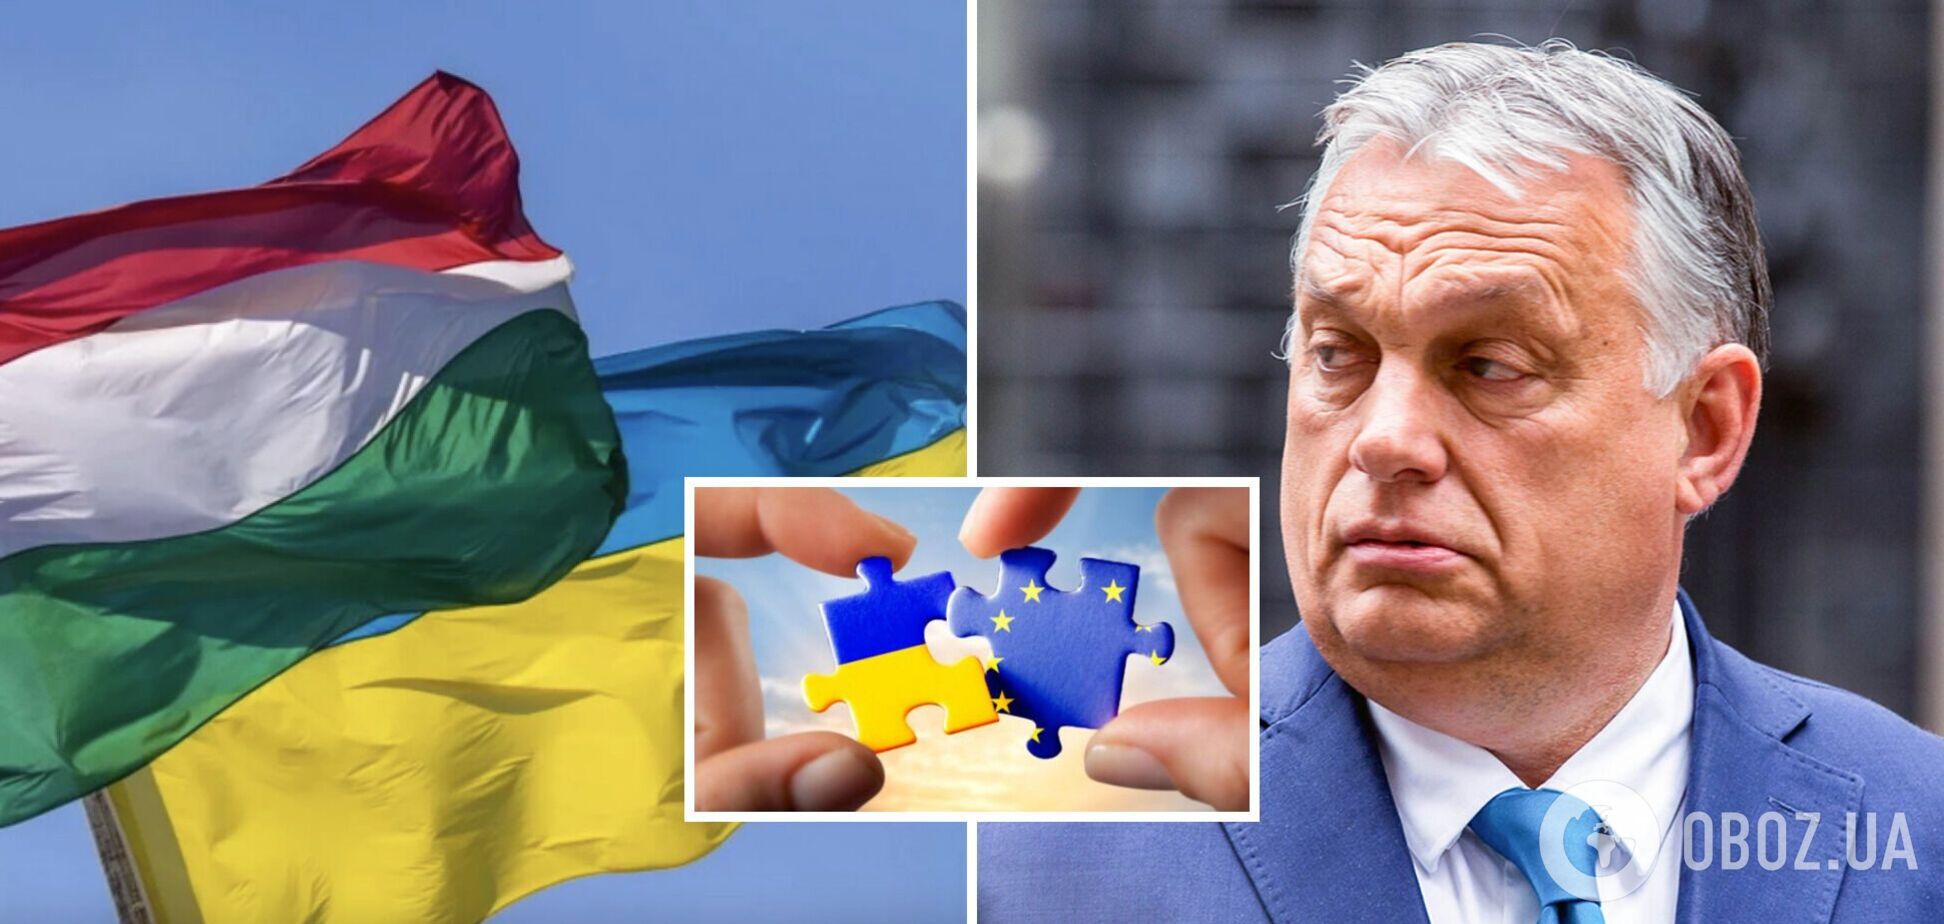 Ще 5 угорських громад приєднались до заклику до Орбана підтримати переговори про вступ України до ЄС